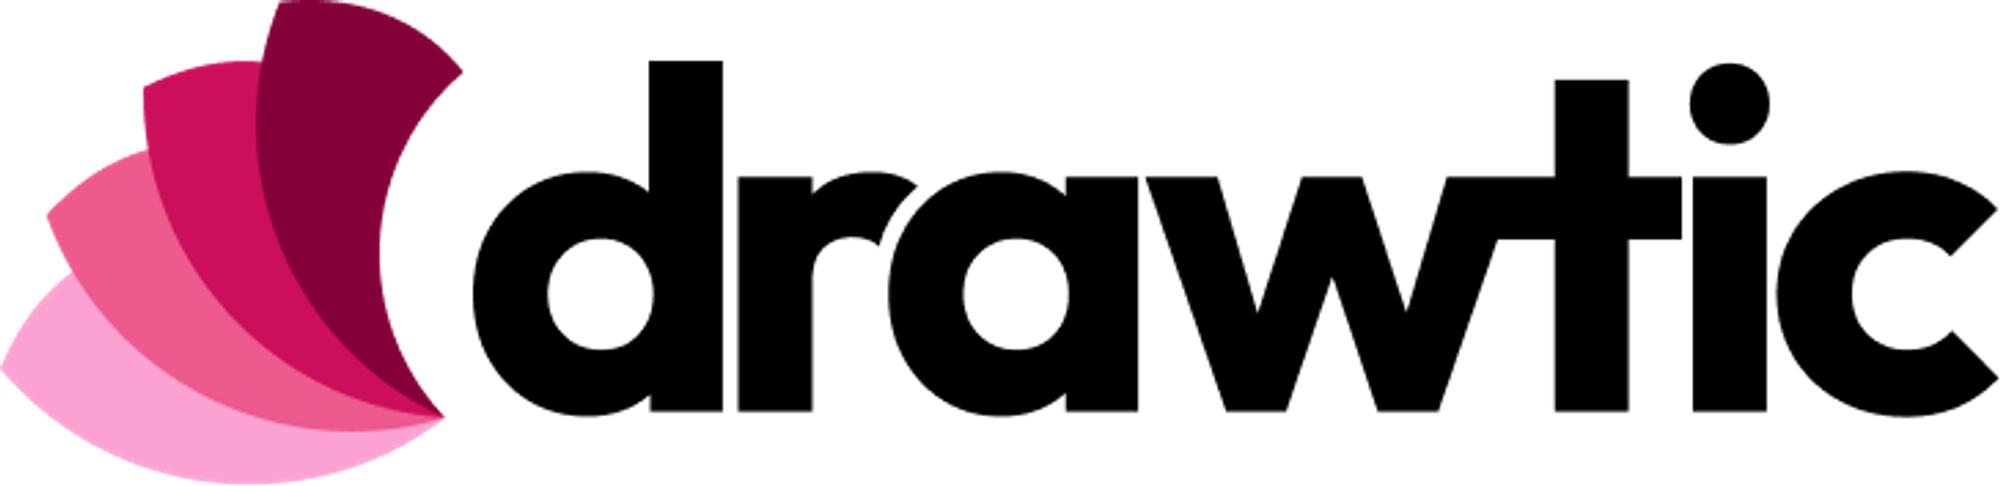 Modern logo design for drawtic.com